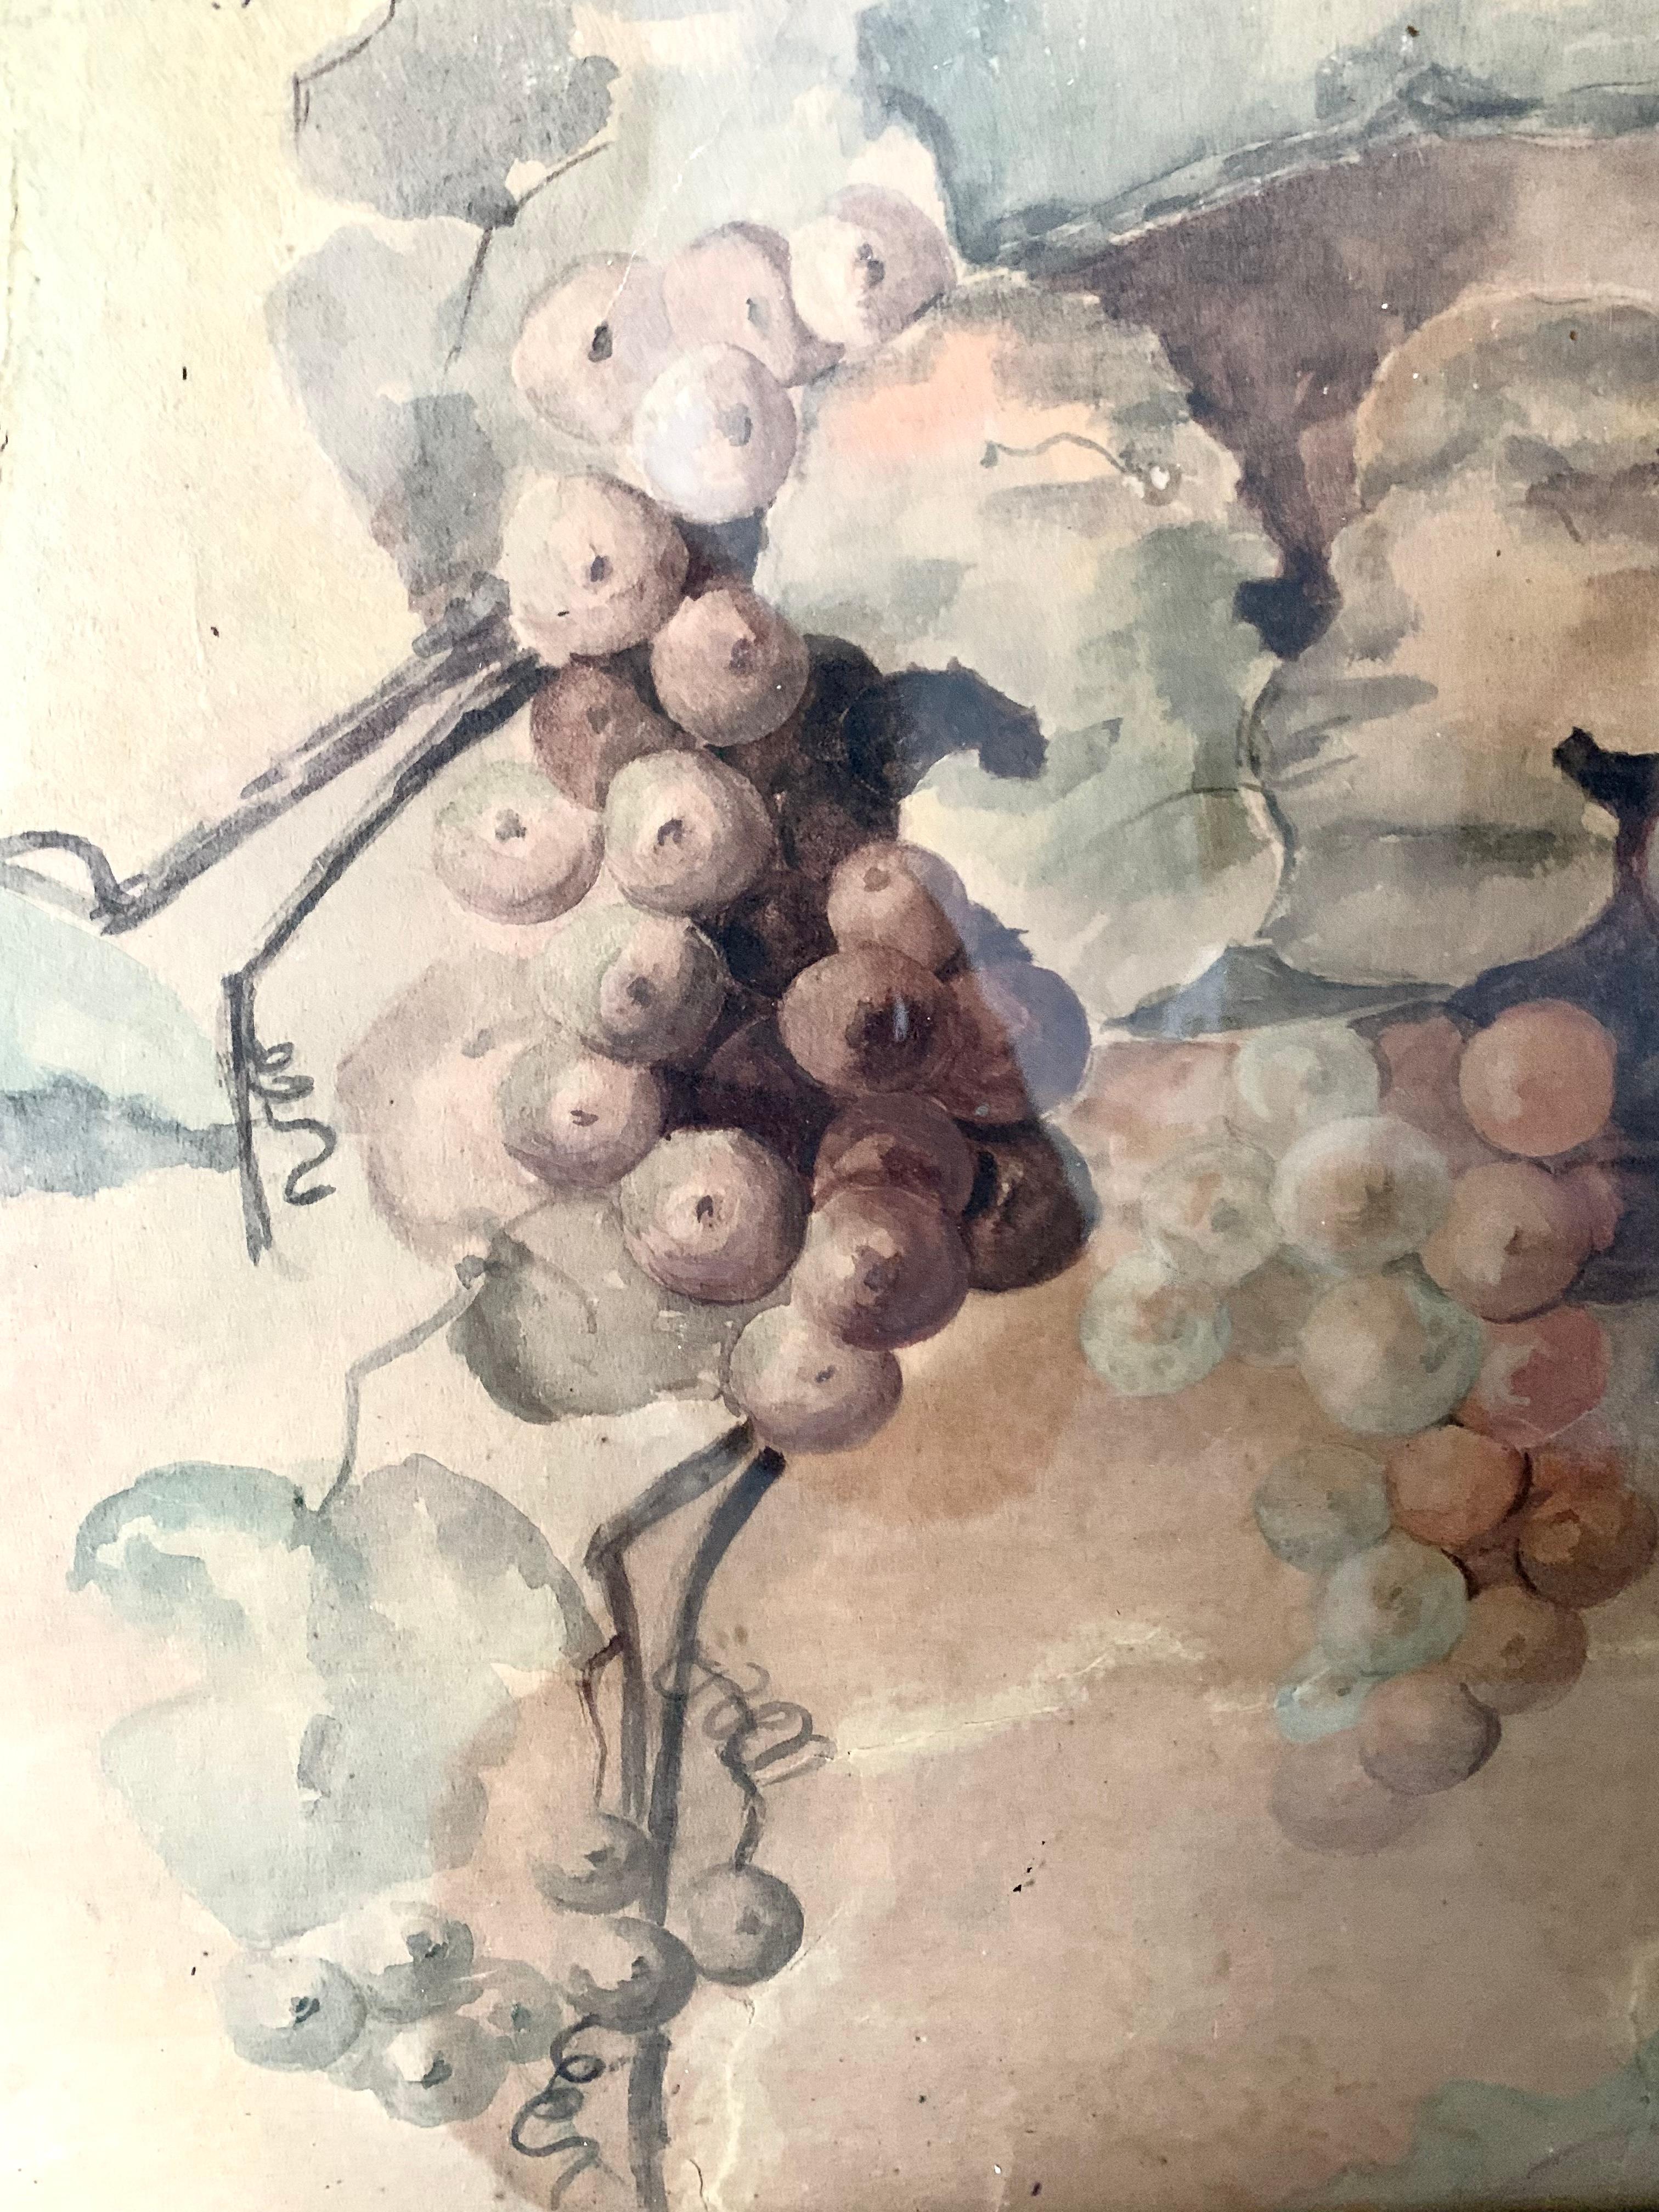 Belle aquarelle représentant des grappes de raisins.les couleurs donnent une certaine poésie à l'œuvre. Cet ouvrage est signé S. E. Burns et daté de 1906.